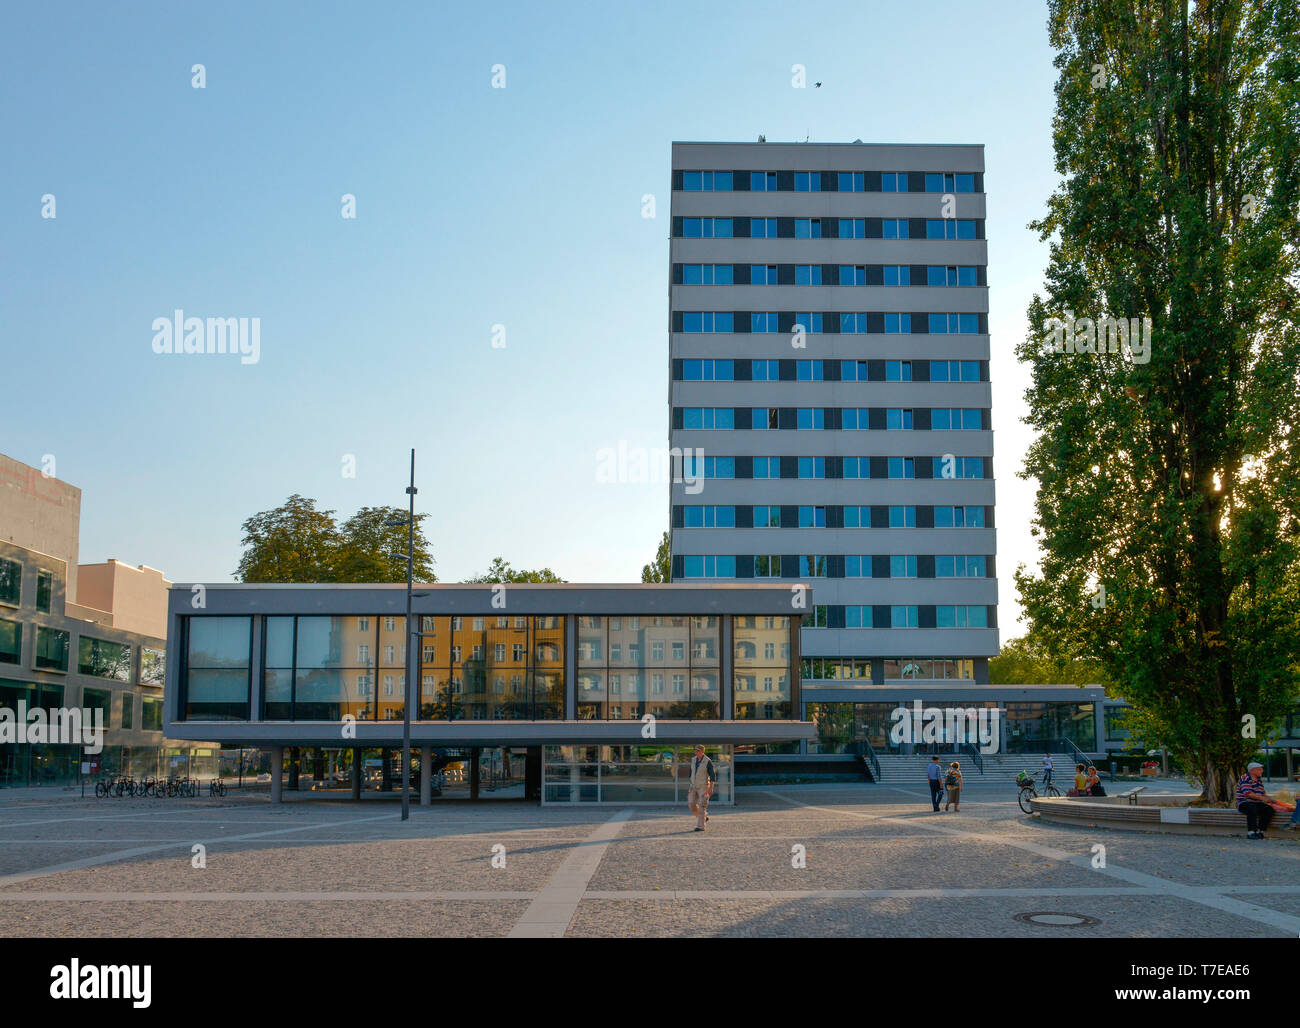 Platz vor dem Jobcenter, Muellerstrasse, Mariage, Mitte, Berlin, Deutschland, Müllerstrasse Banque D'Images